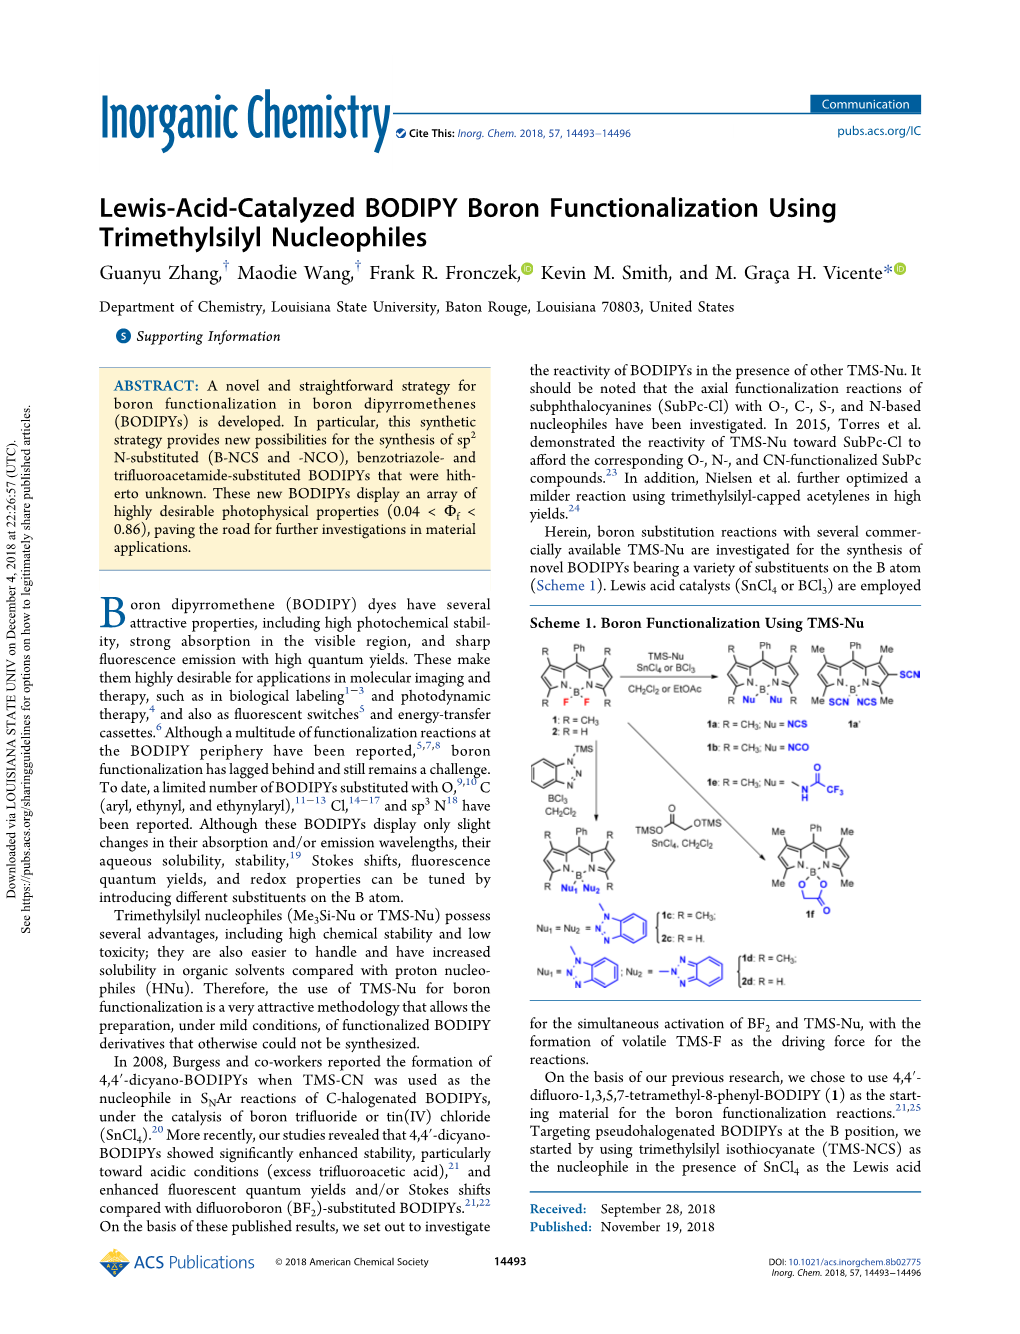 Lewis-Acid-Catalyzed BODIPY Boron Functionalization Using Trimethylsilyl Nucleophiles † † Guanyu Zhang, Maodie Wang, Frank R